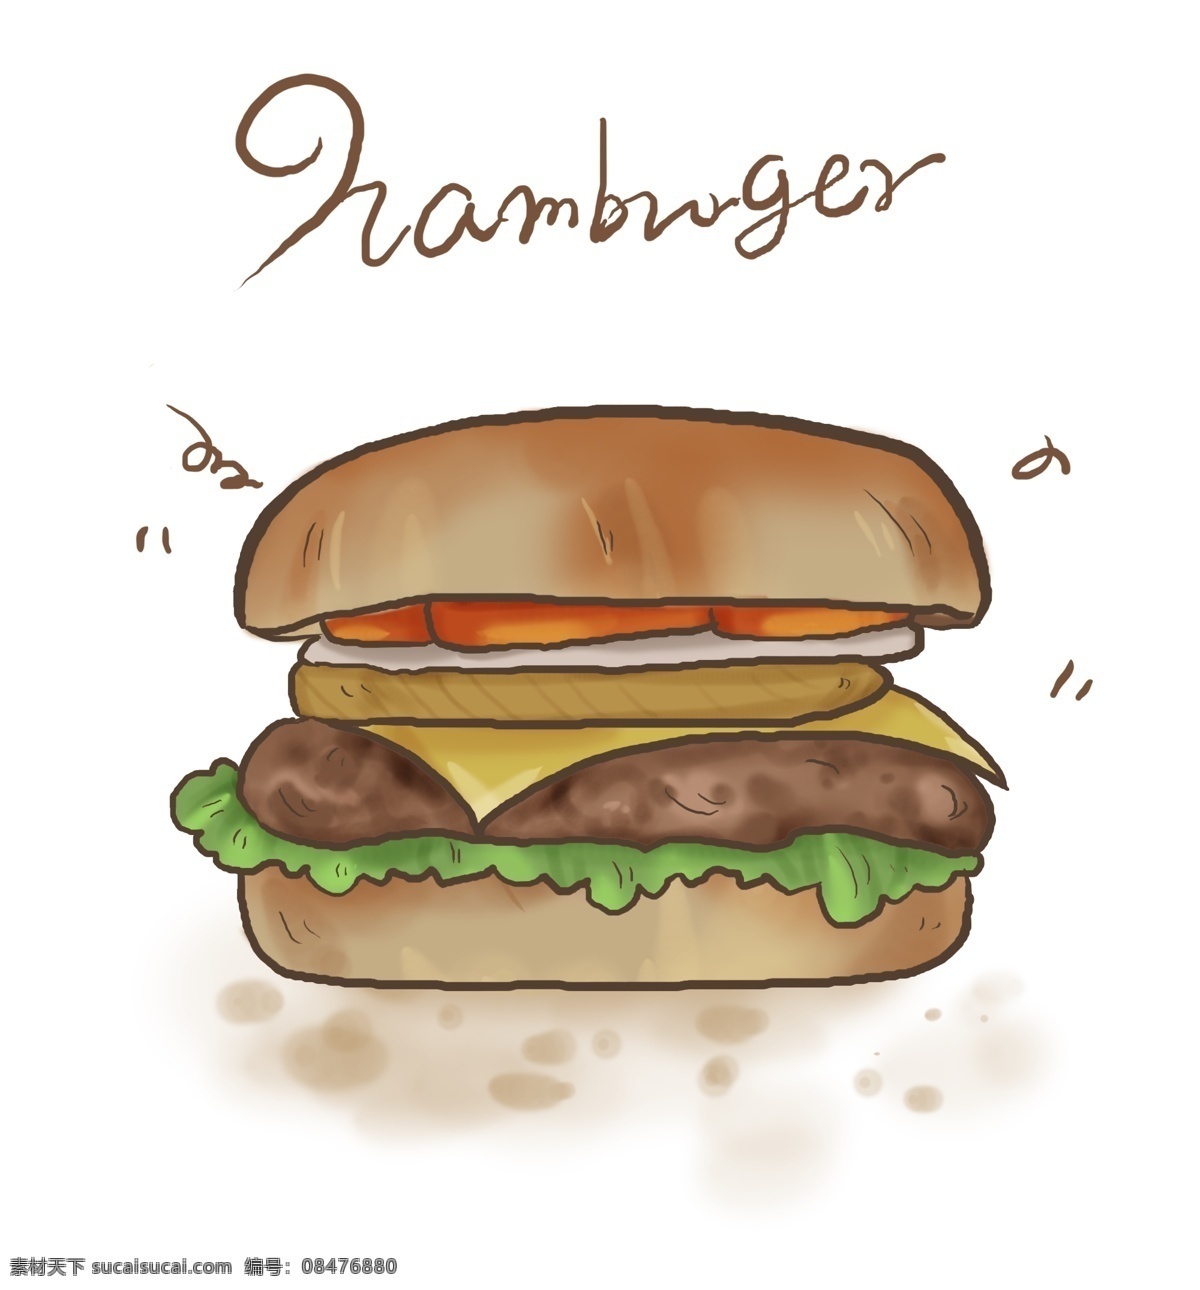 美式 快餐 牛肉 汉堡 餐饮 肉块 汉堡酱 绿色生菜 洋快餐 食材 汉堡包 美食餐饮 汉堡制作 生菜